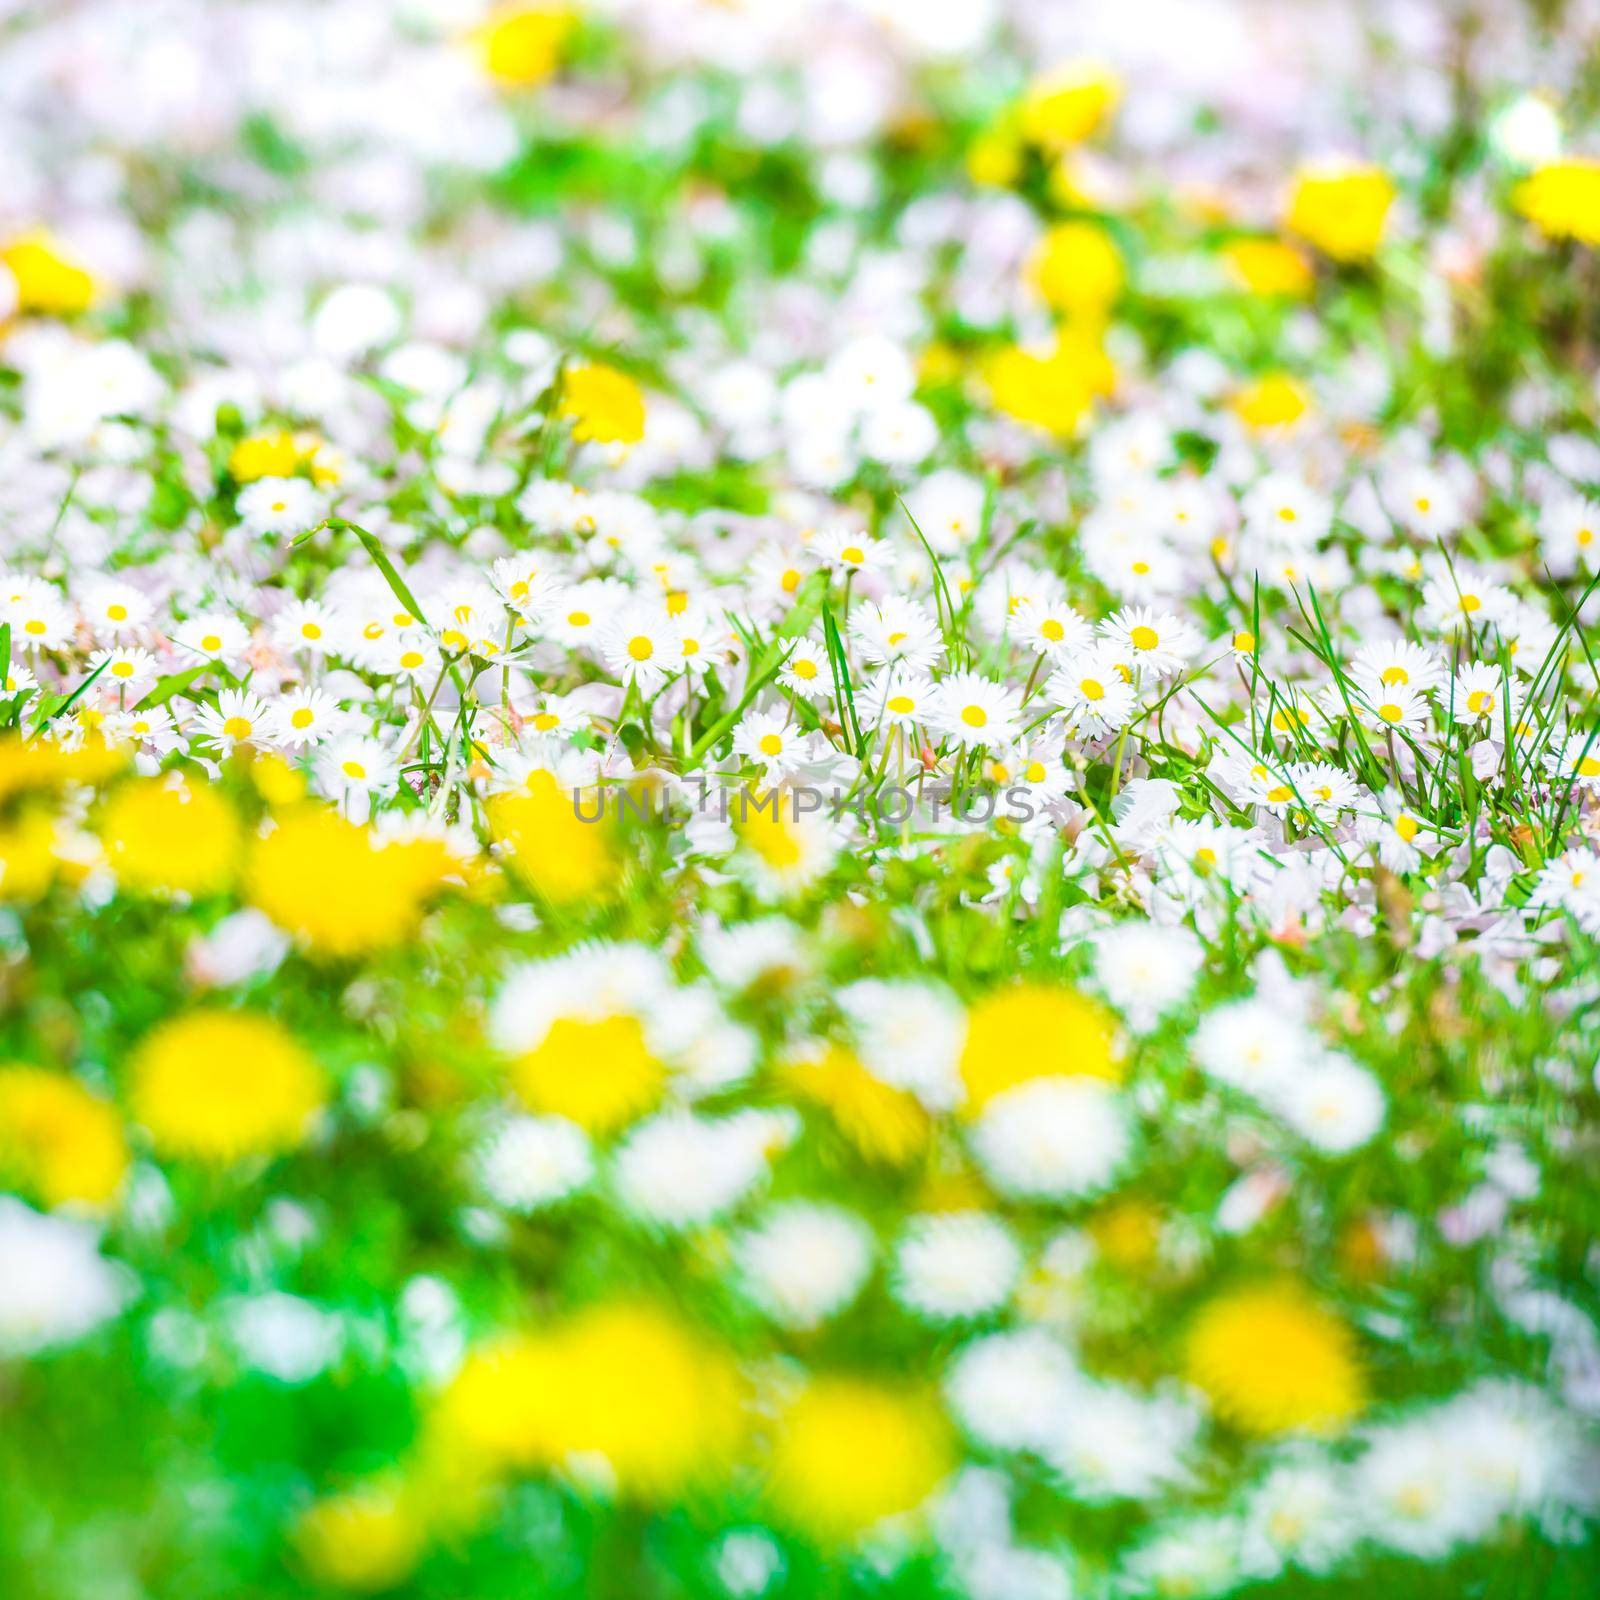 Field of spring flowers by GekaSkr